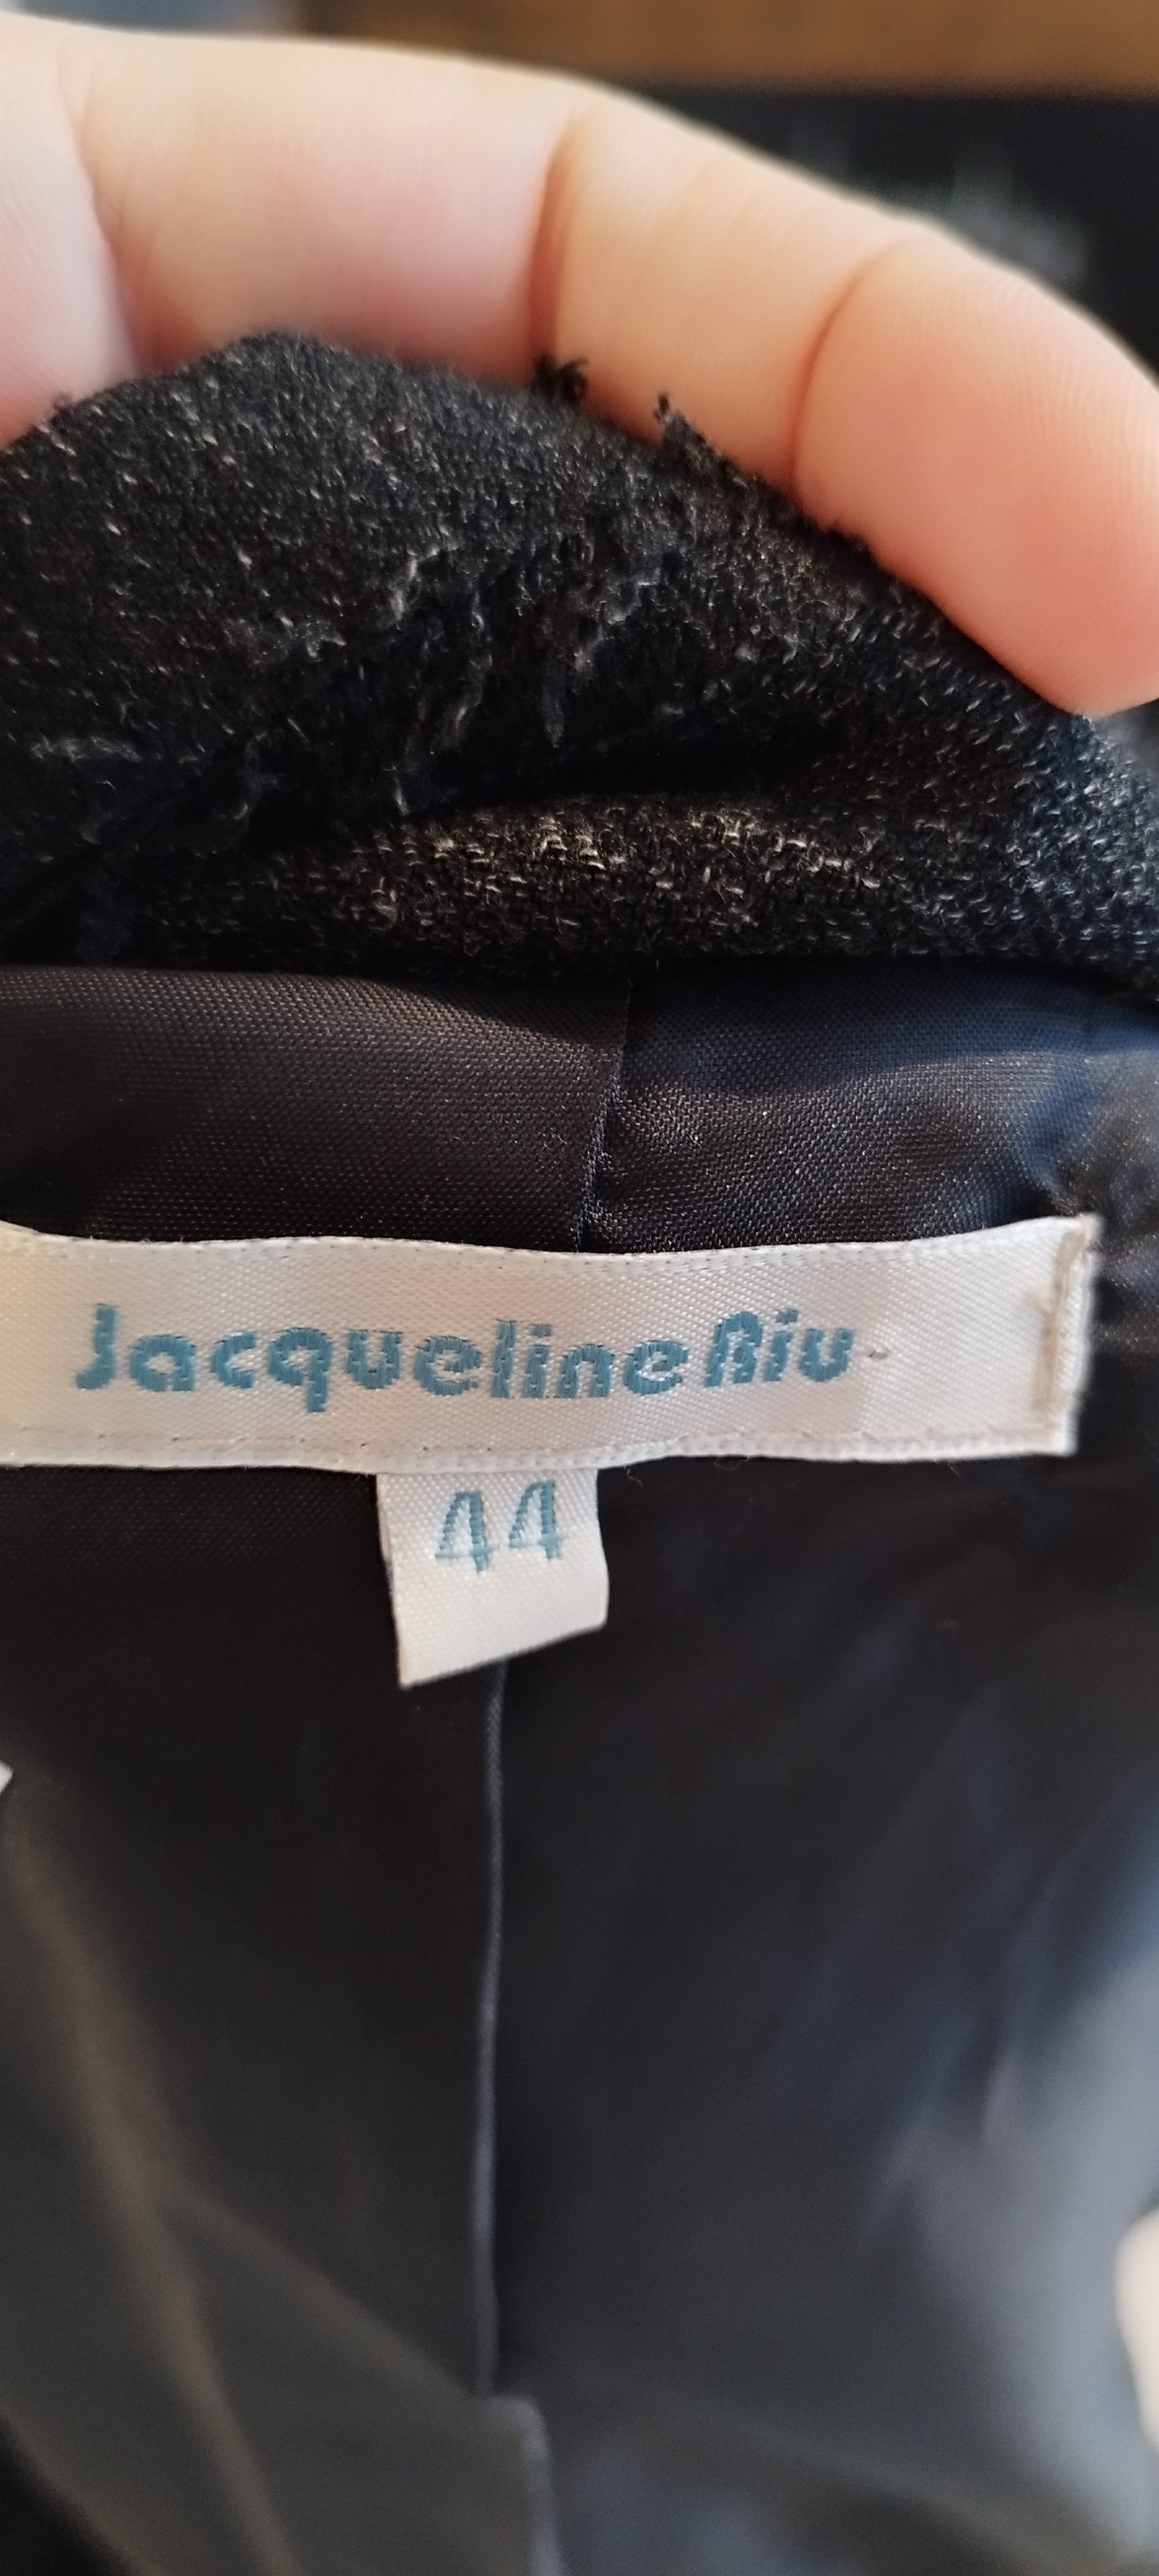 Veste blazer Jacqueline Riu